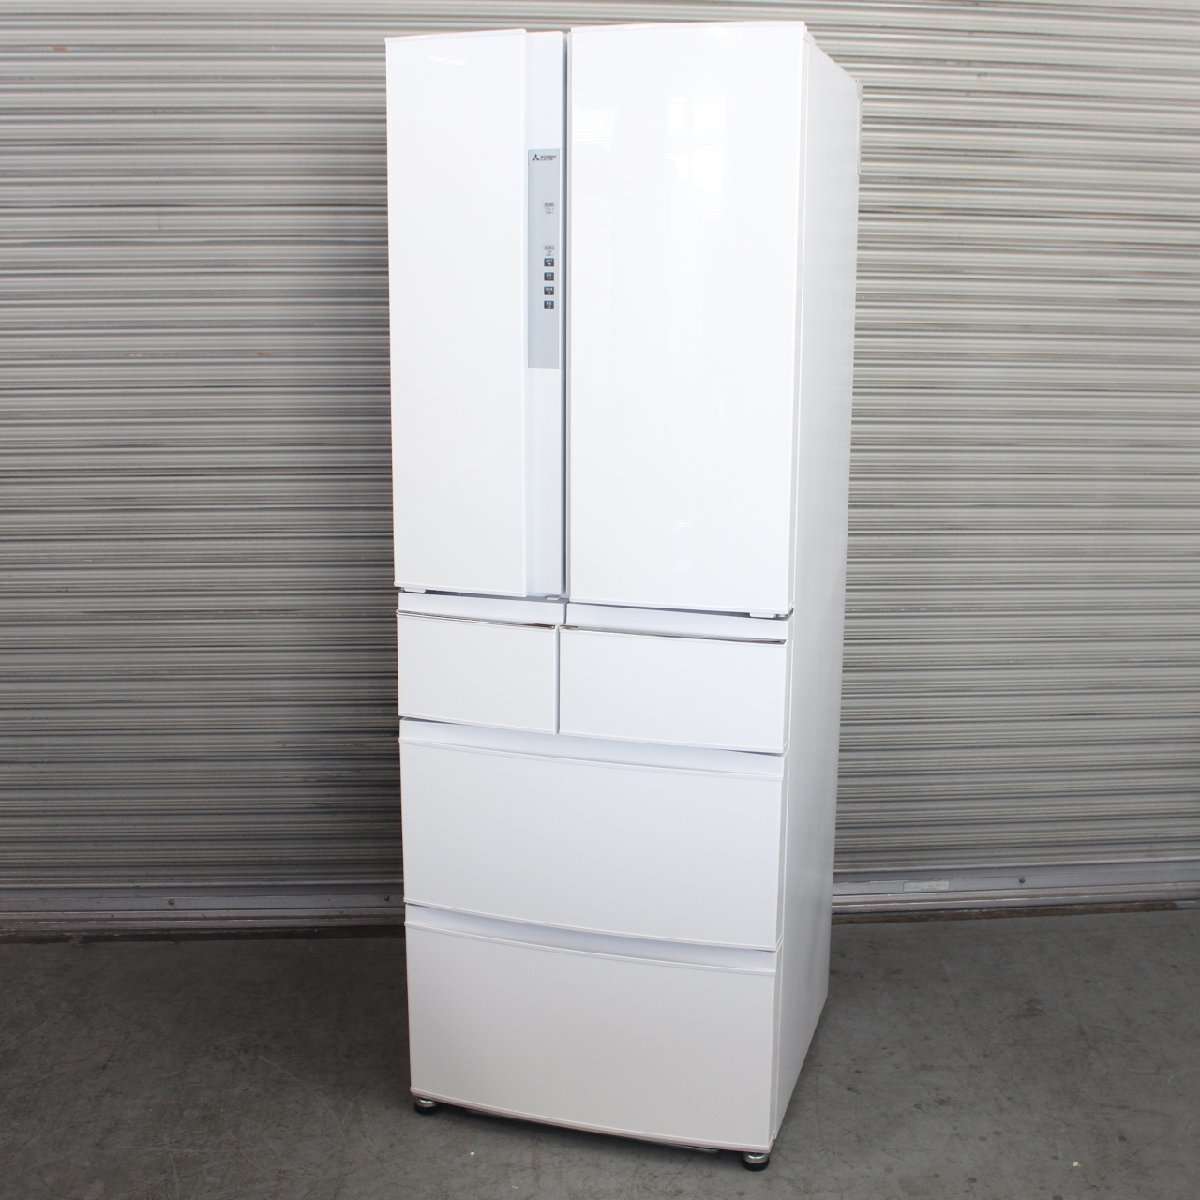 川崎市川崎区にて 三菱  6ドア冷凍冷蔵庫 MR-RX46C-W 2019年製 を出張買取させて頂きました。